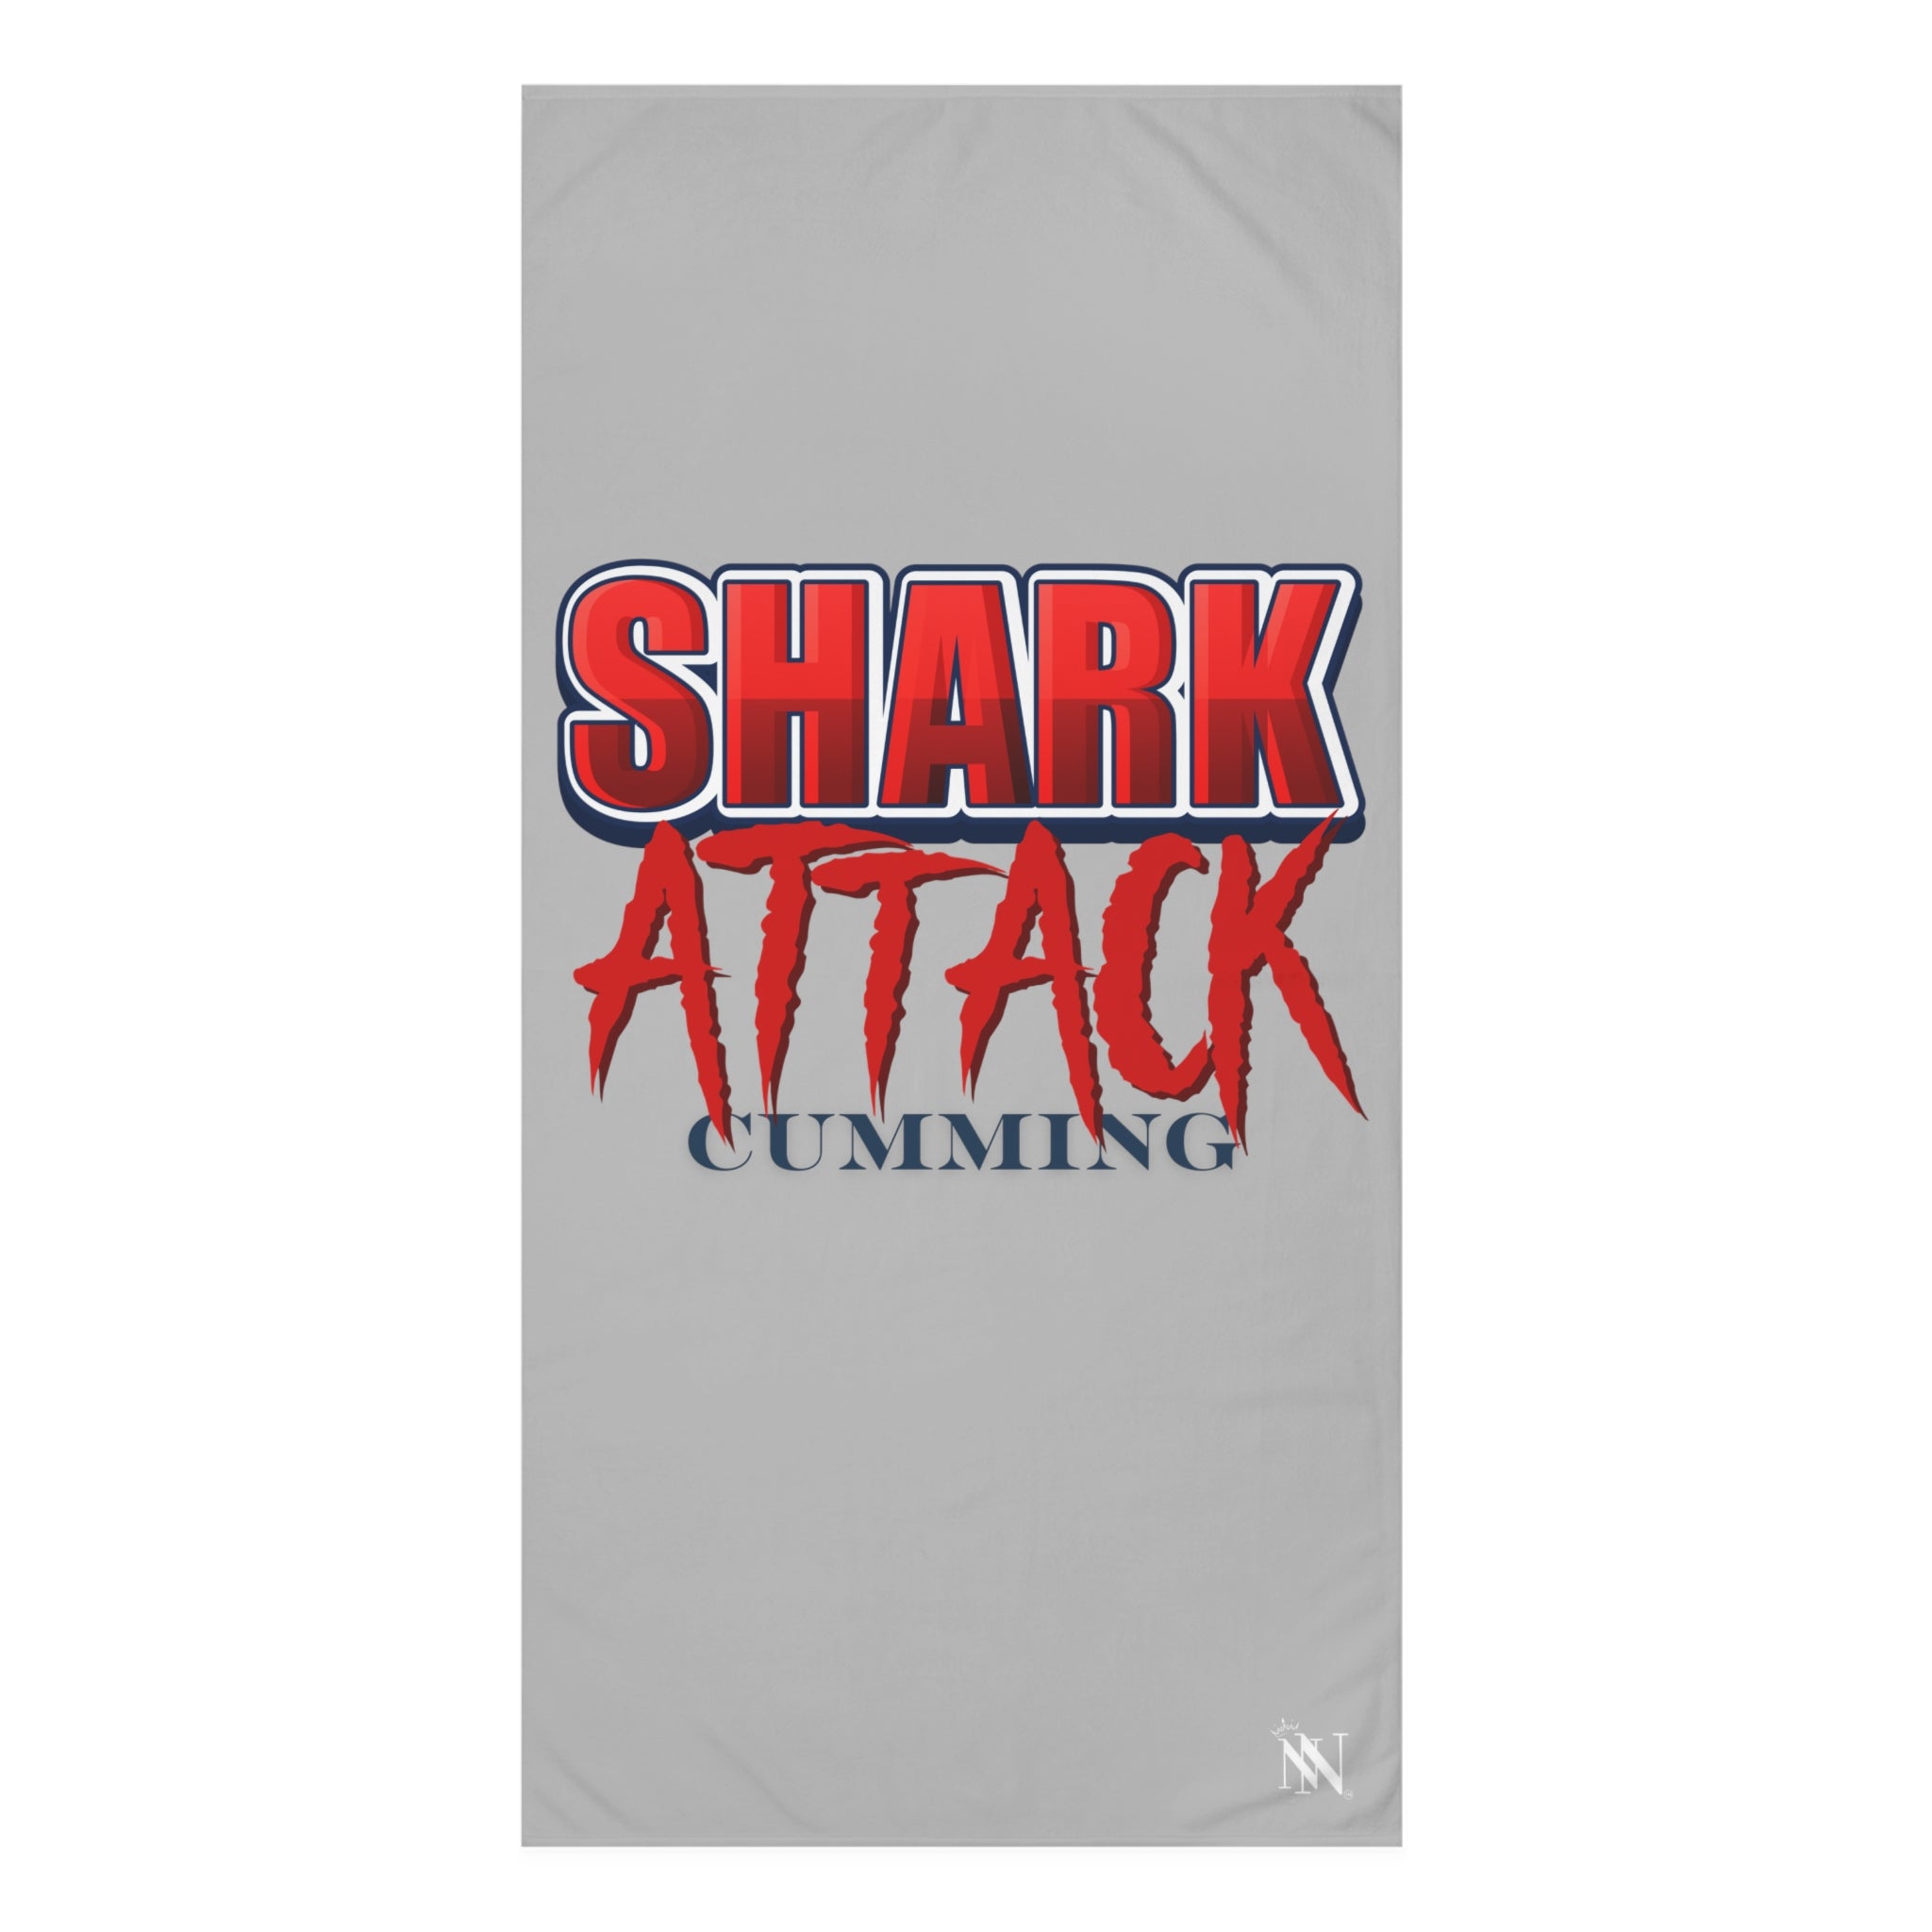 Shark attack cumming towel